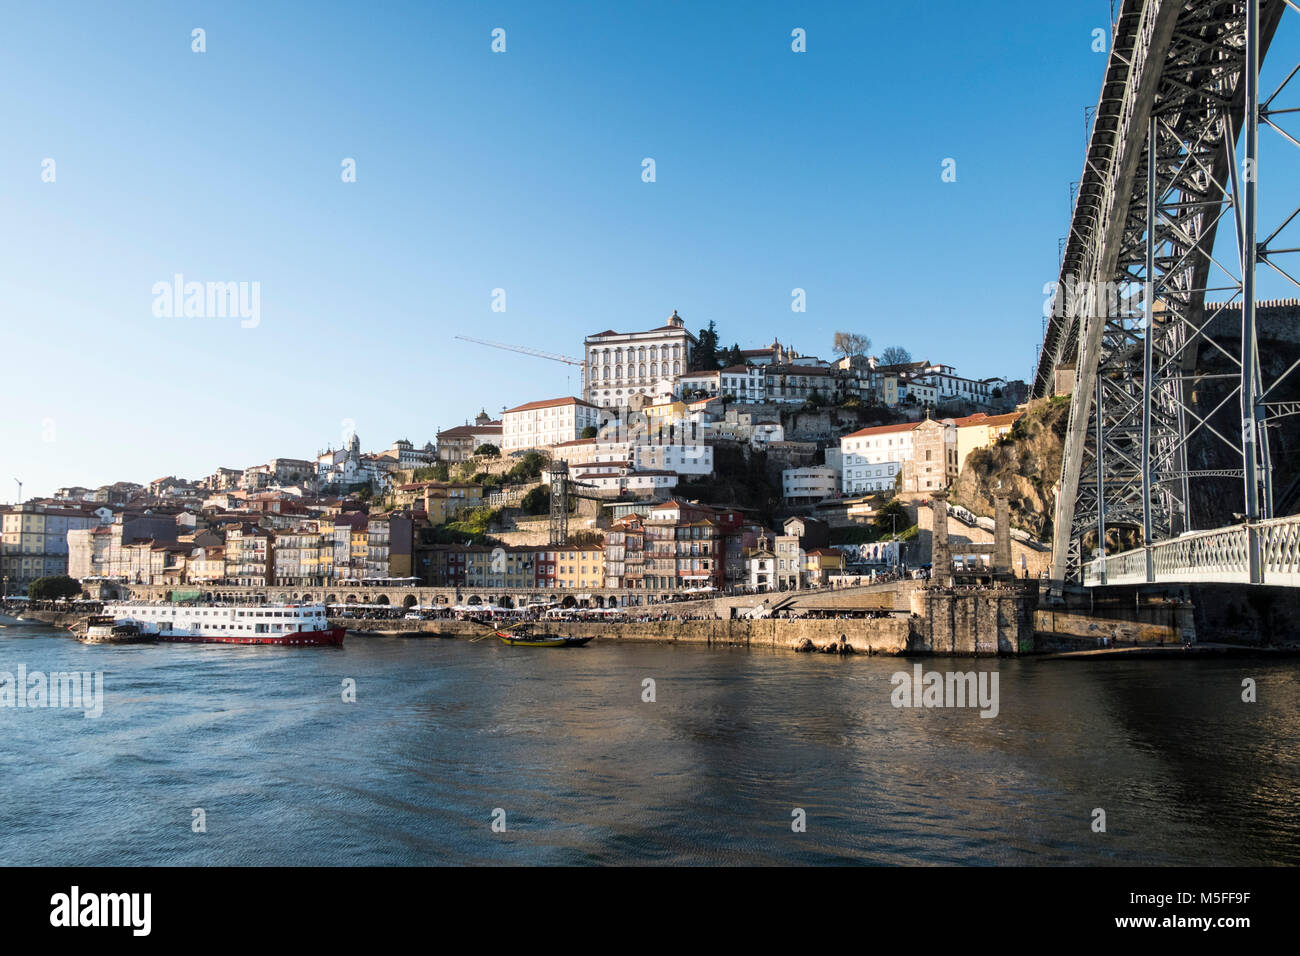 Cityscape with Douro river in Porto, Portugal Stock Photo